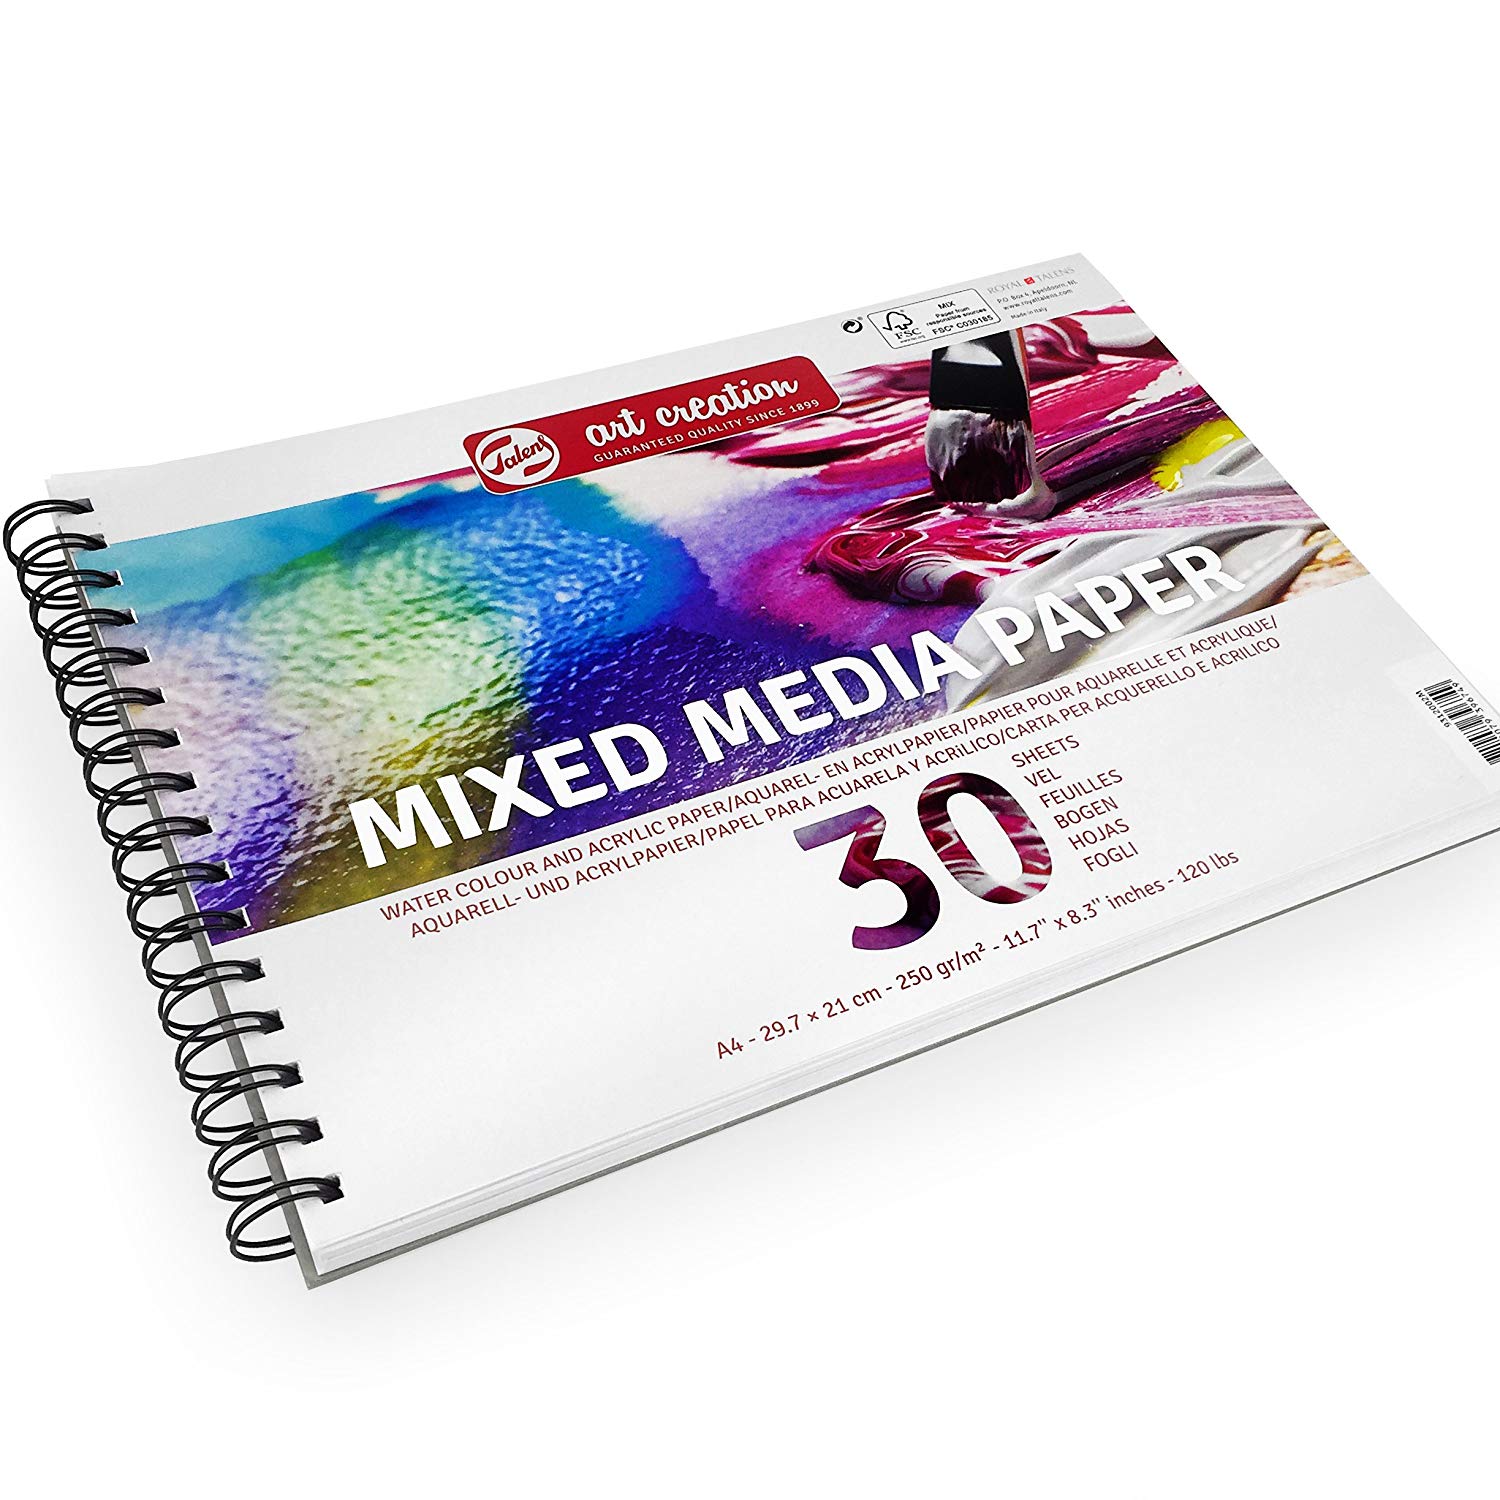 Mixed Media Paper A4 250 g 30 Sheets